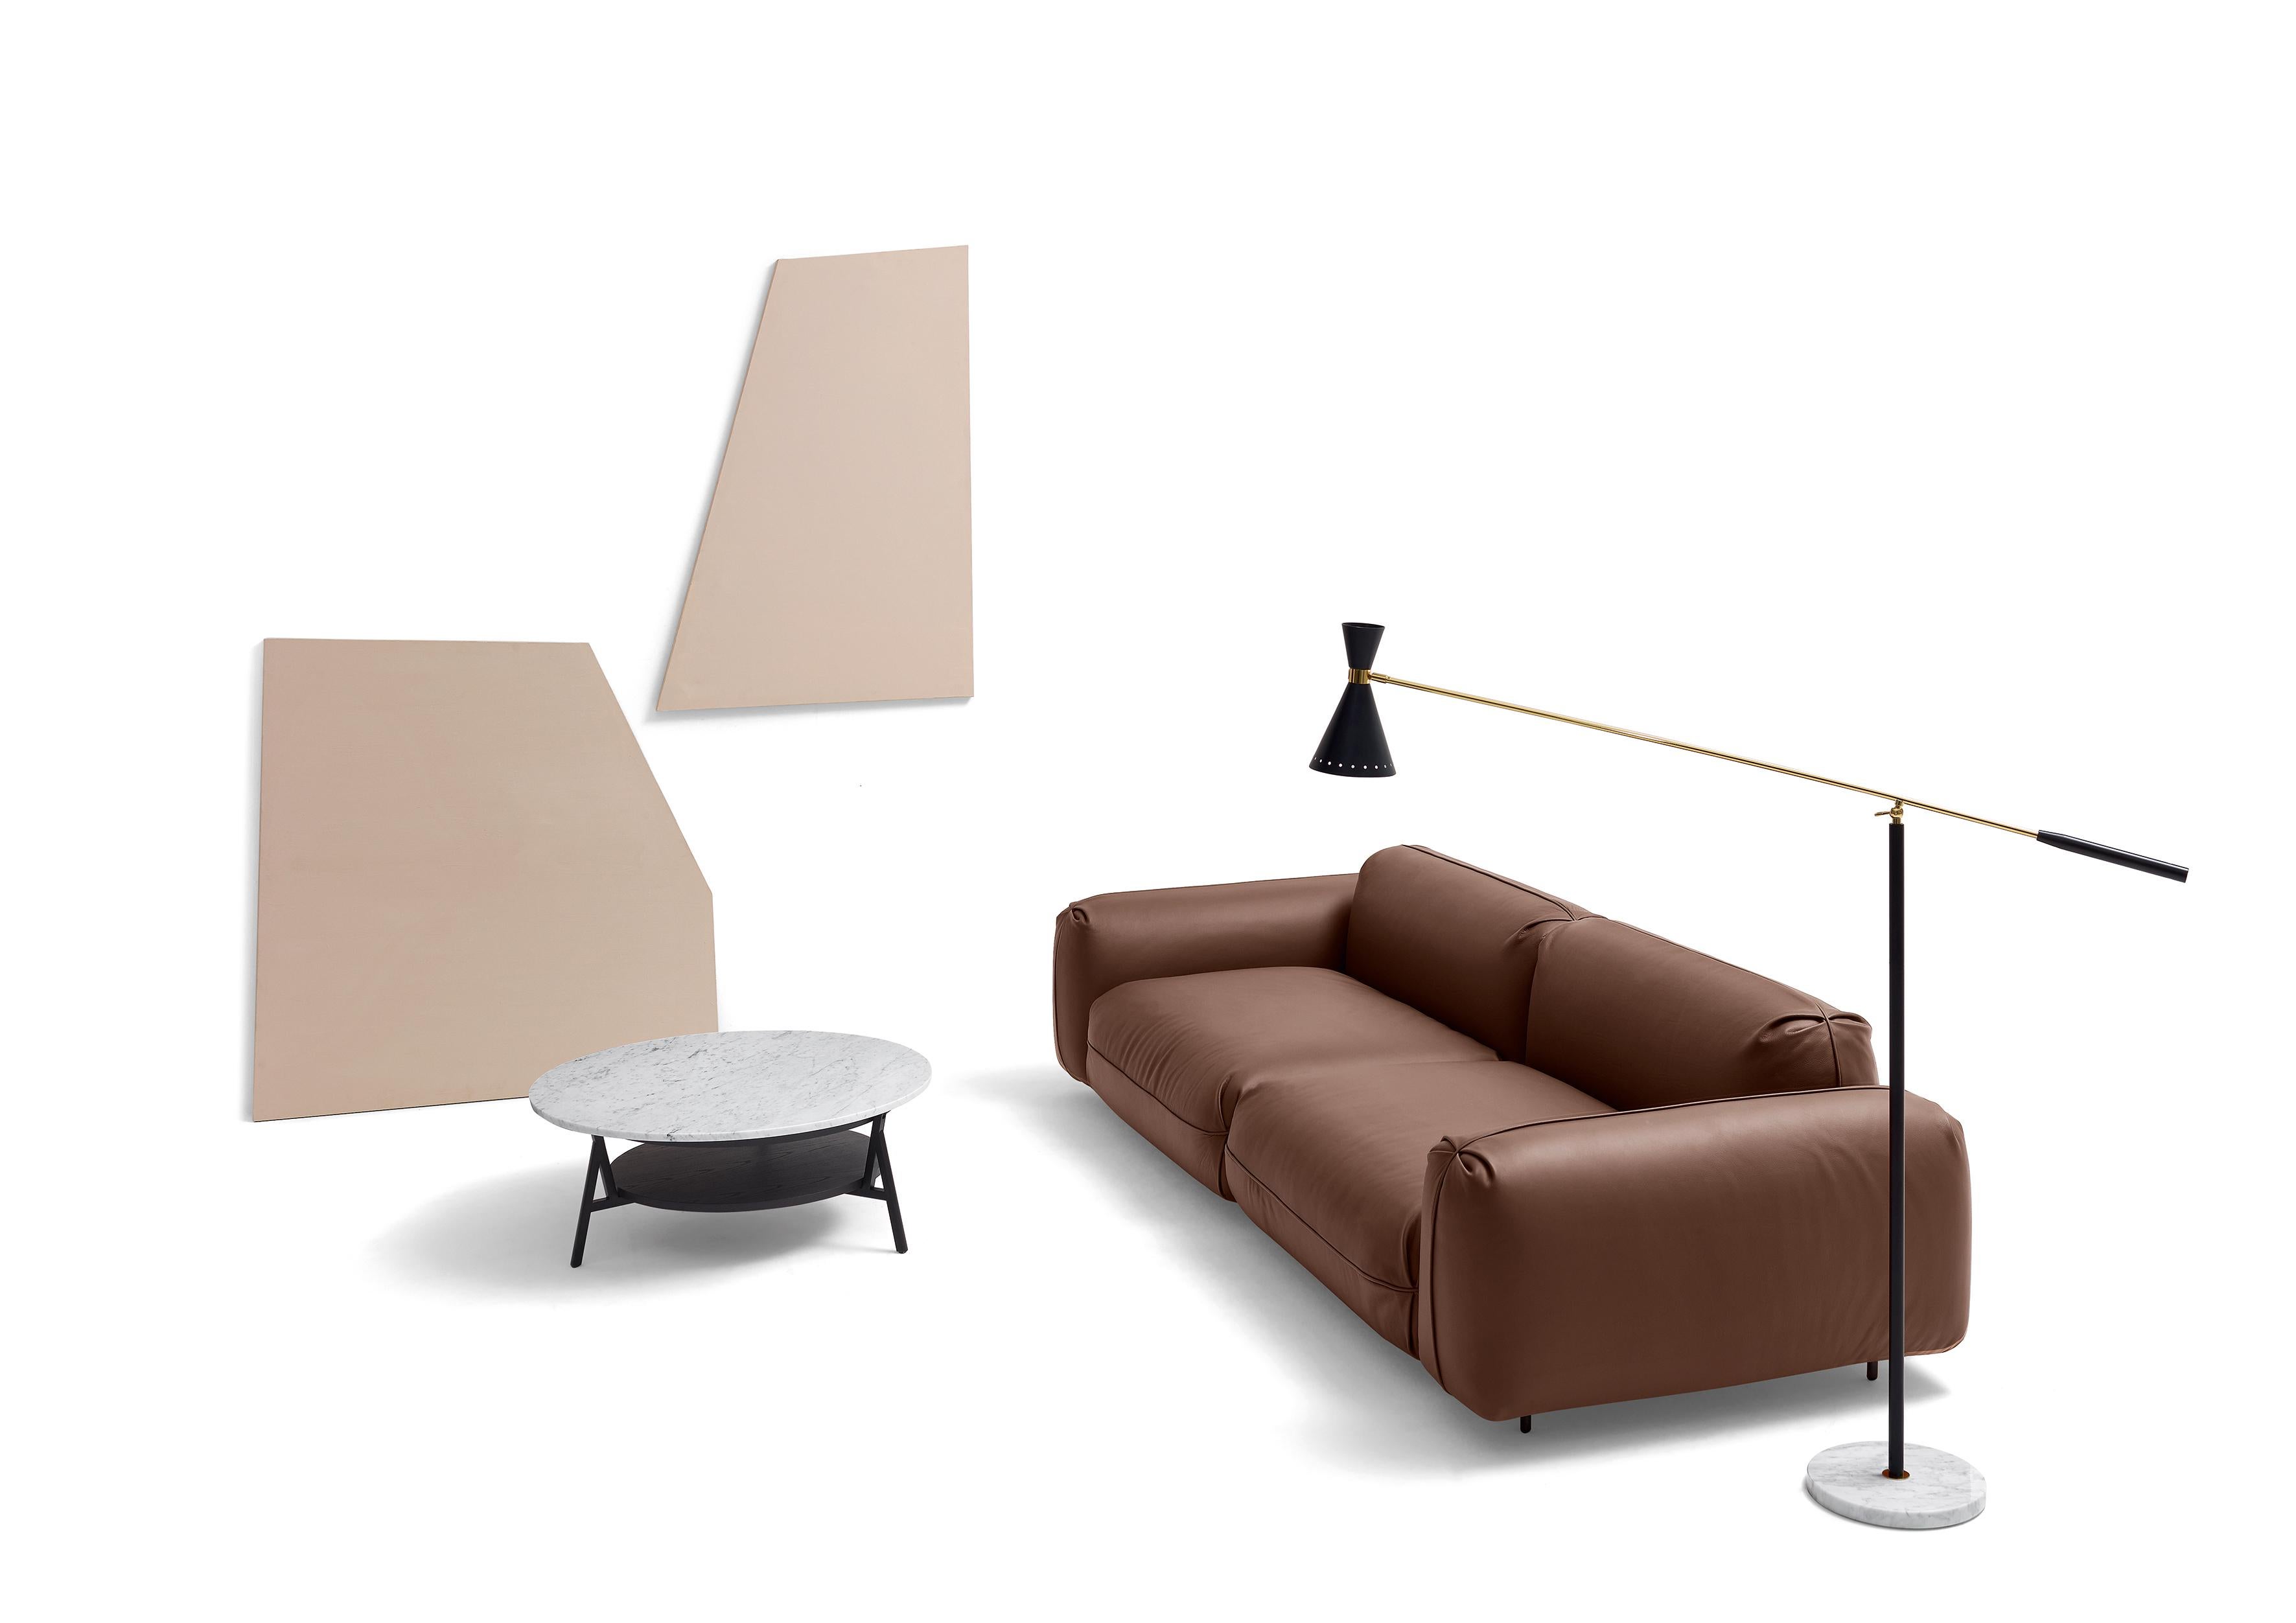 arflex tokio sofa price